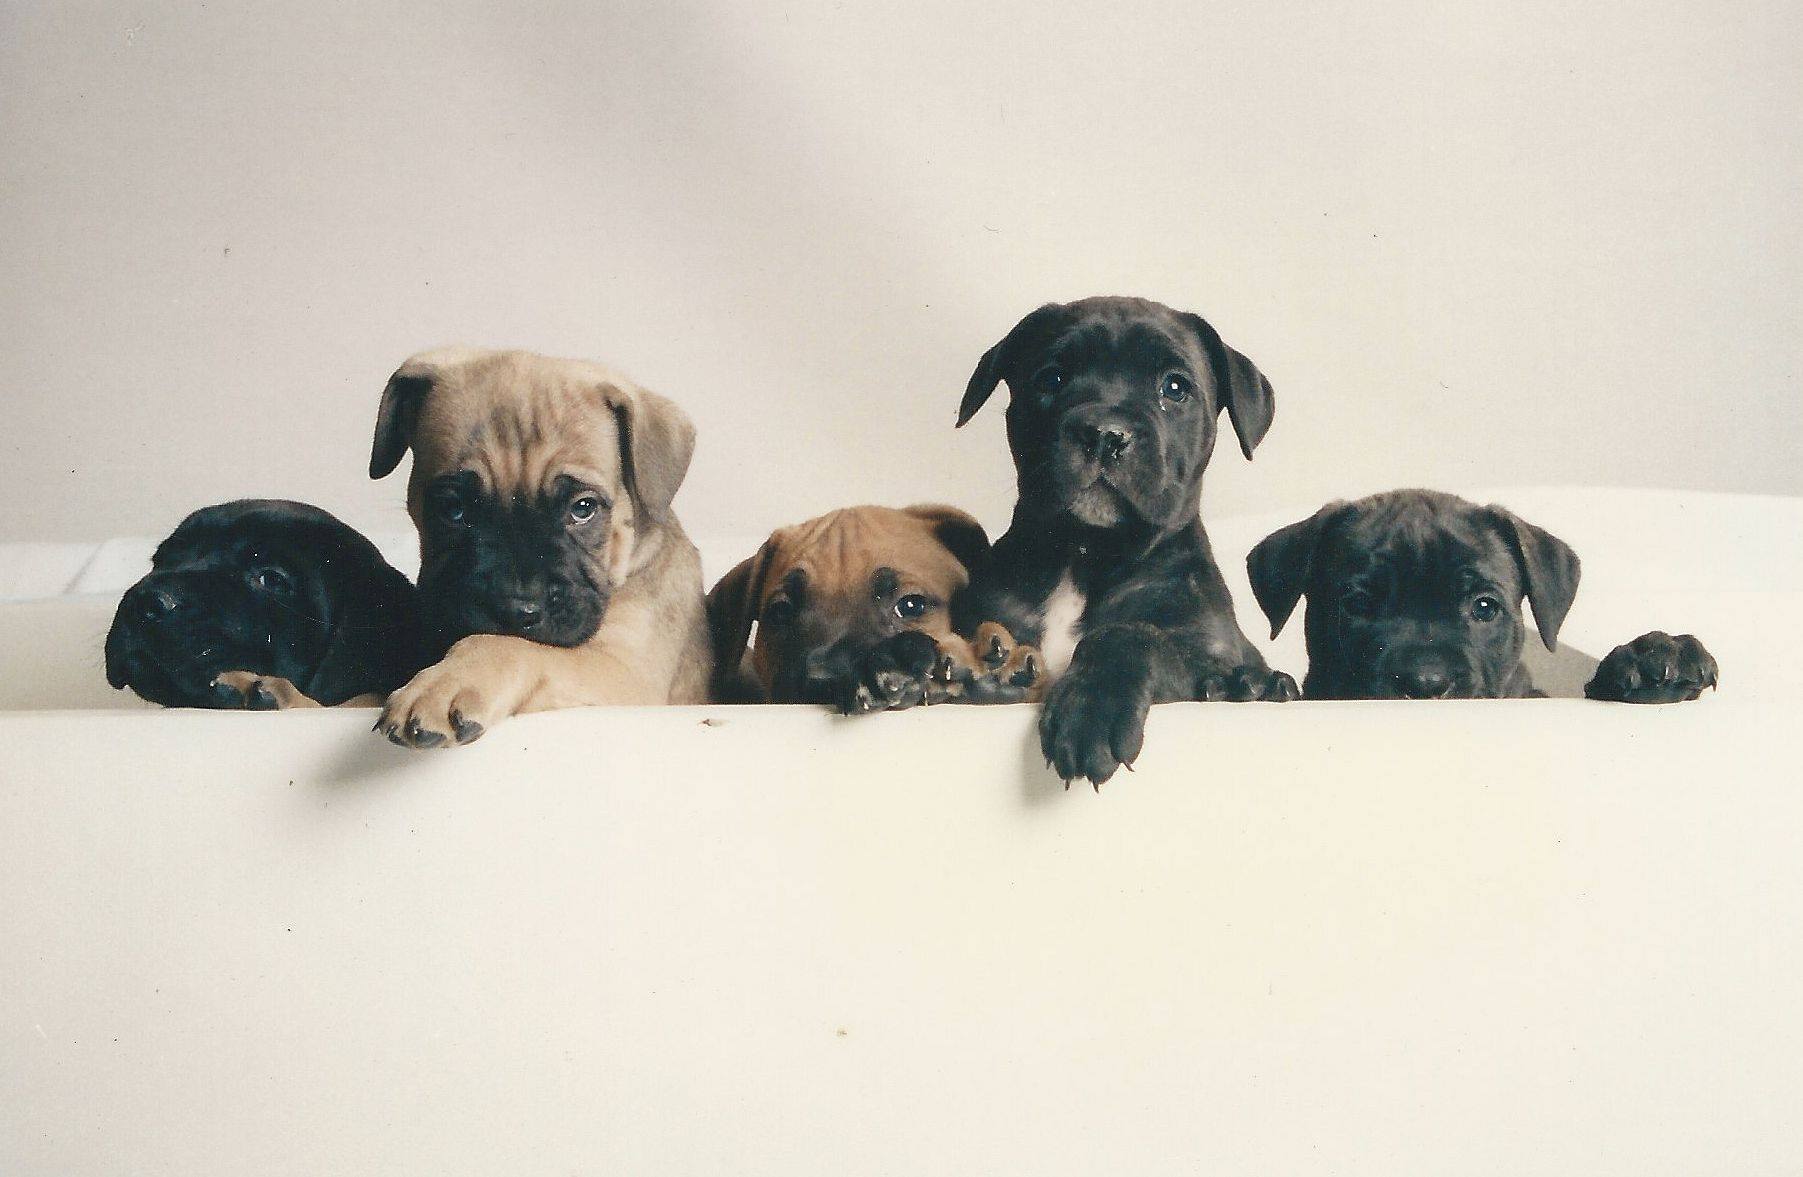 Cane Corso pups.